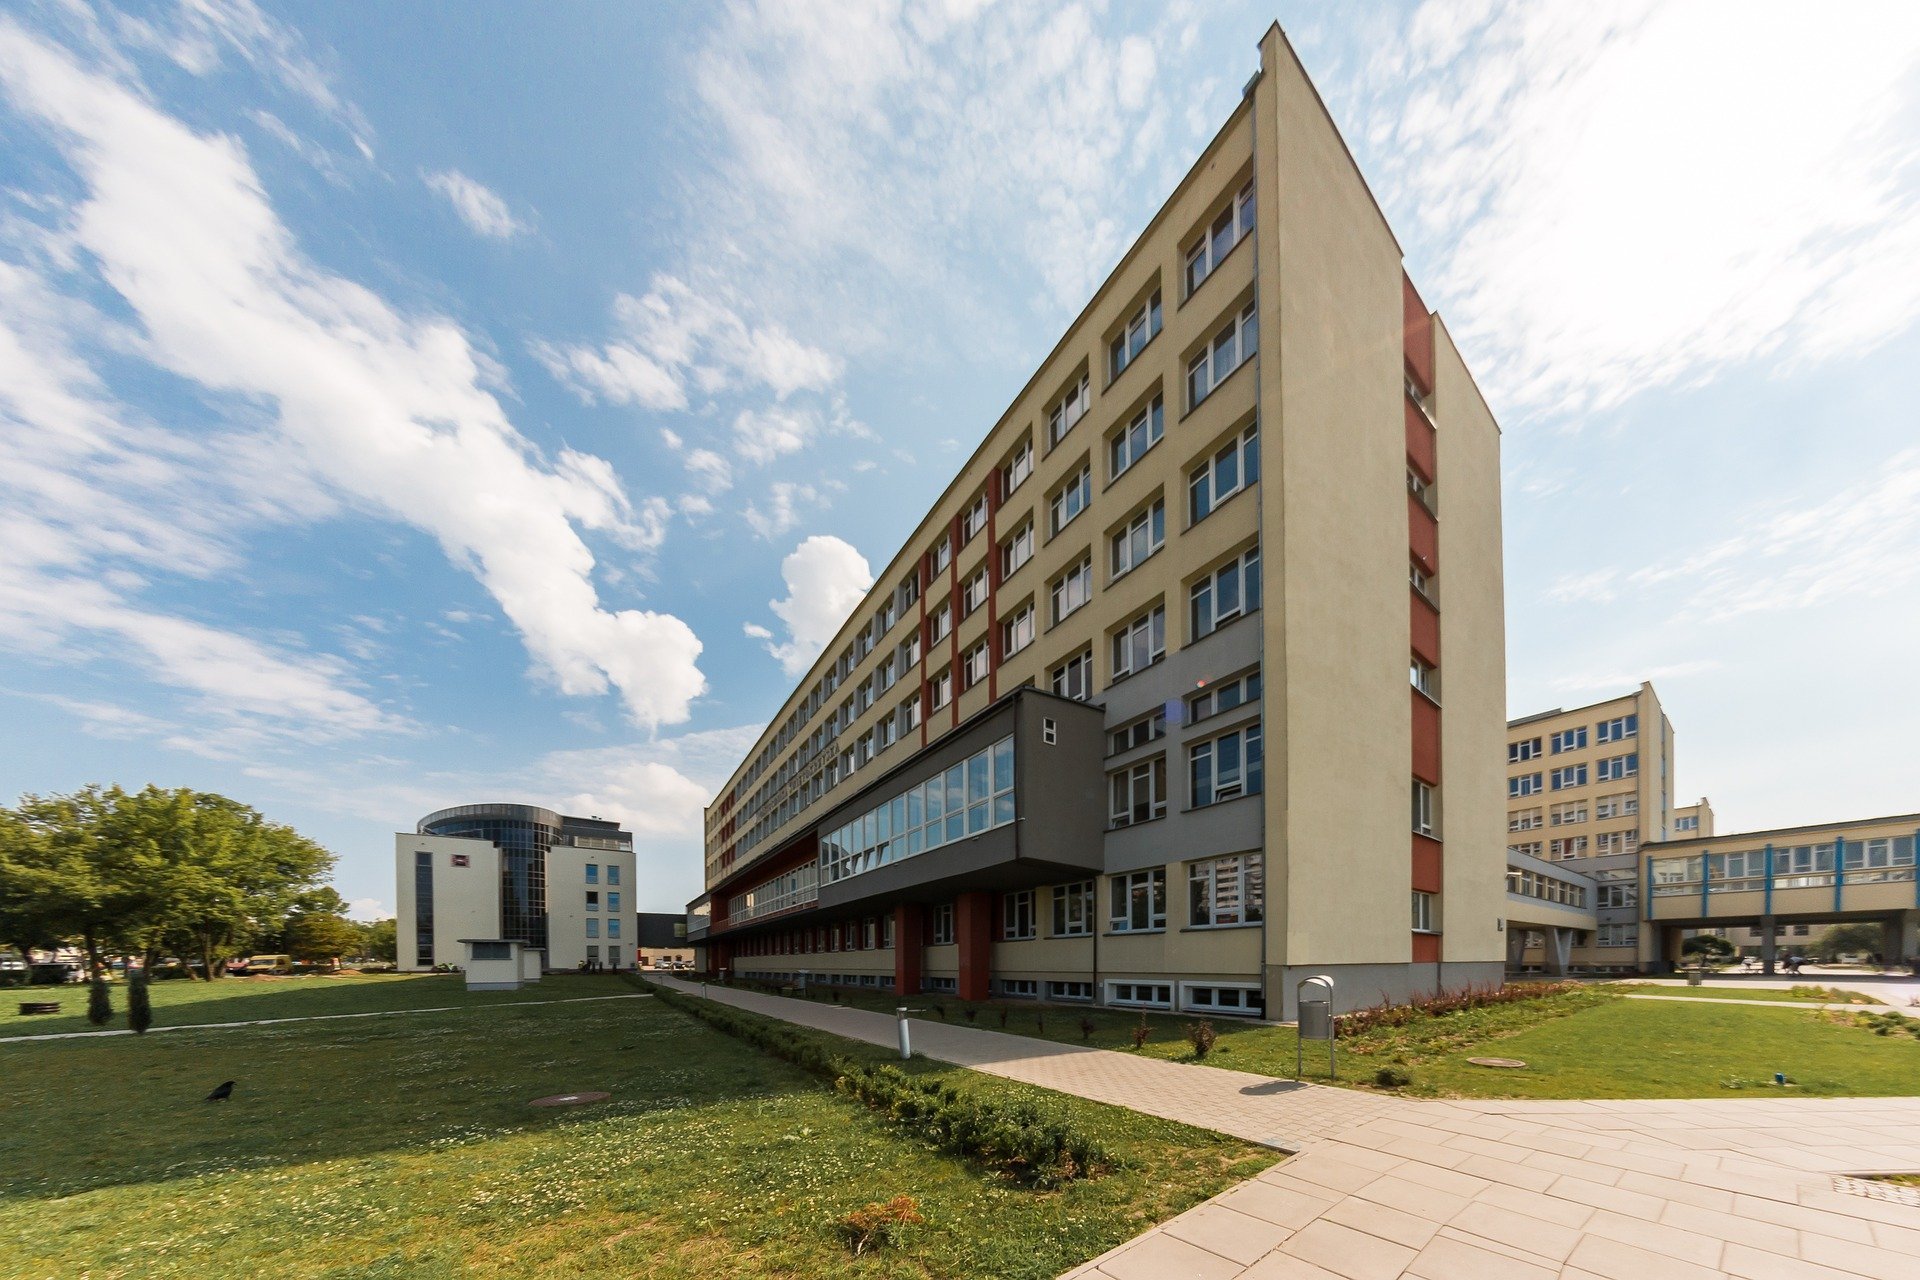 

В Ижевске в районе Культбазы построят новую школу

